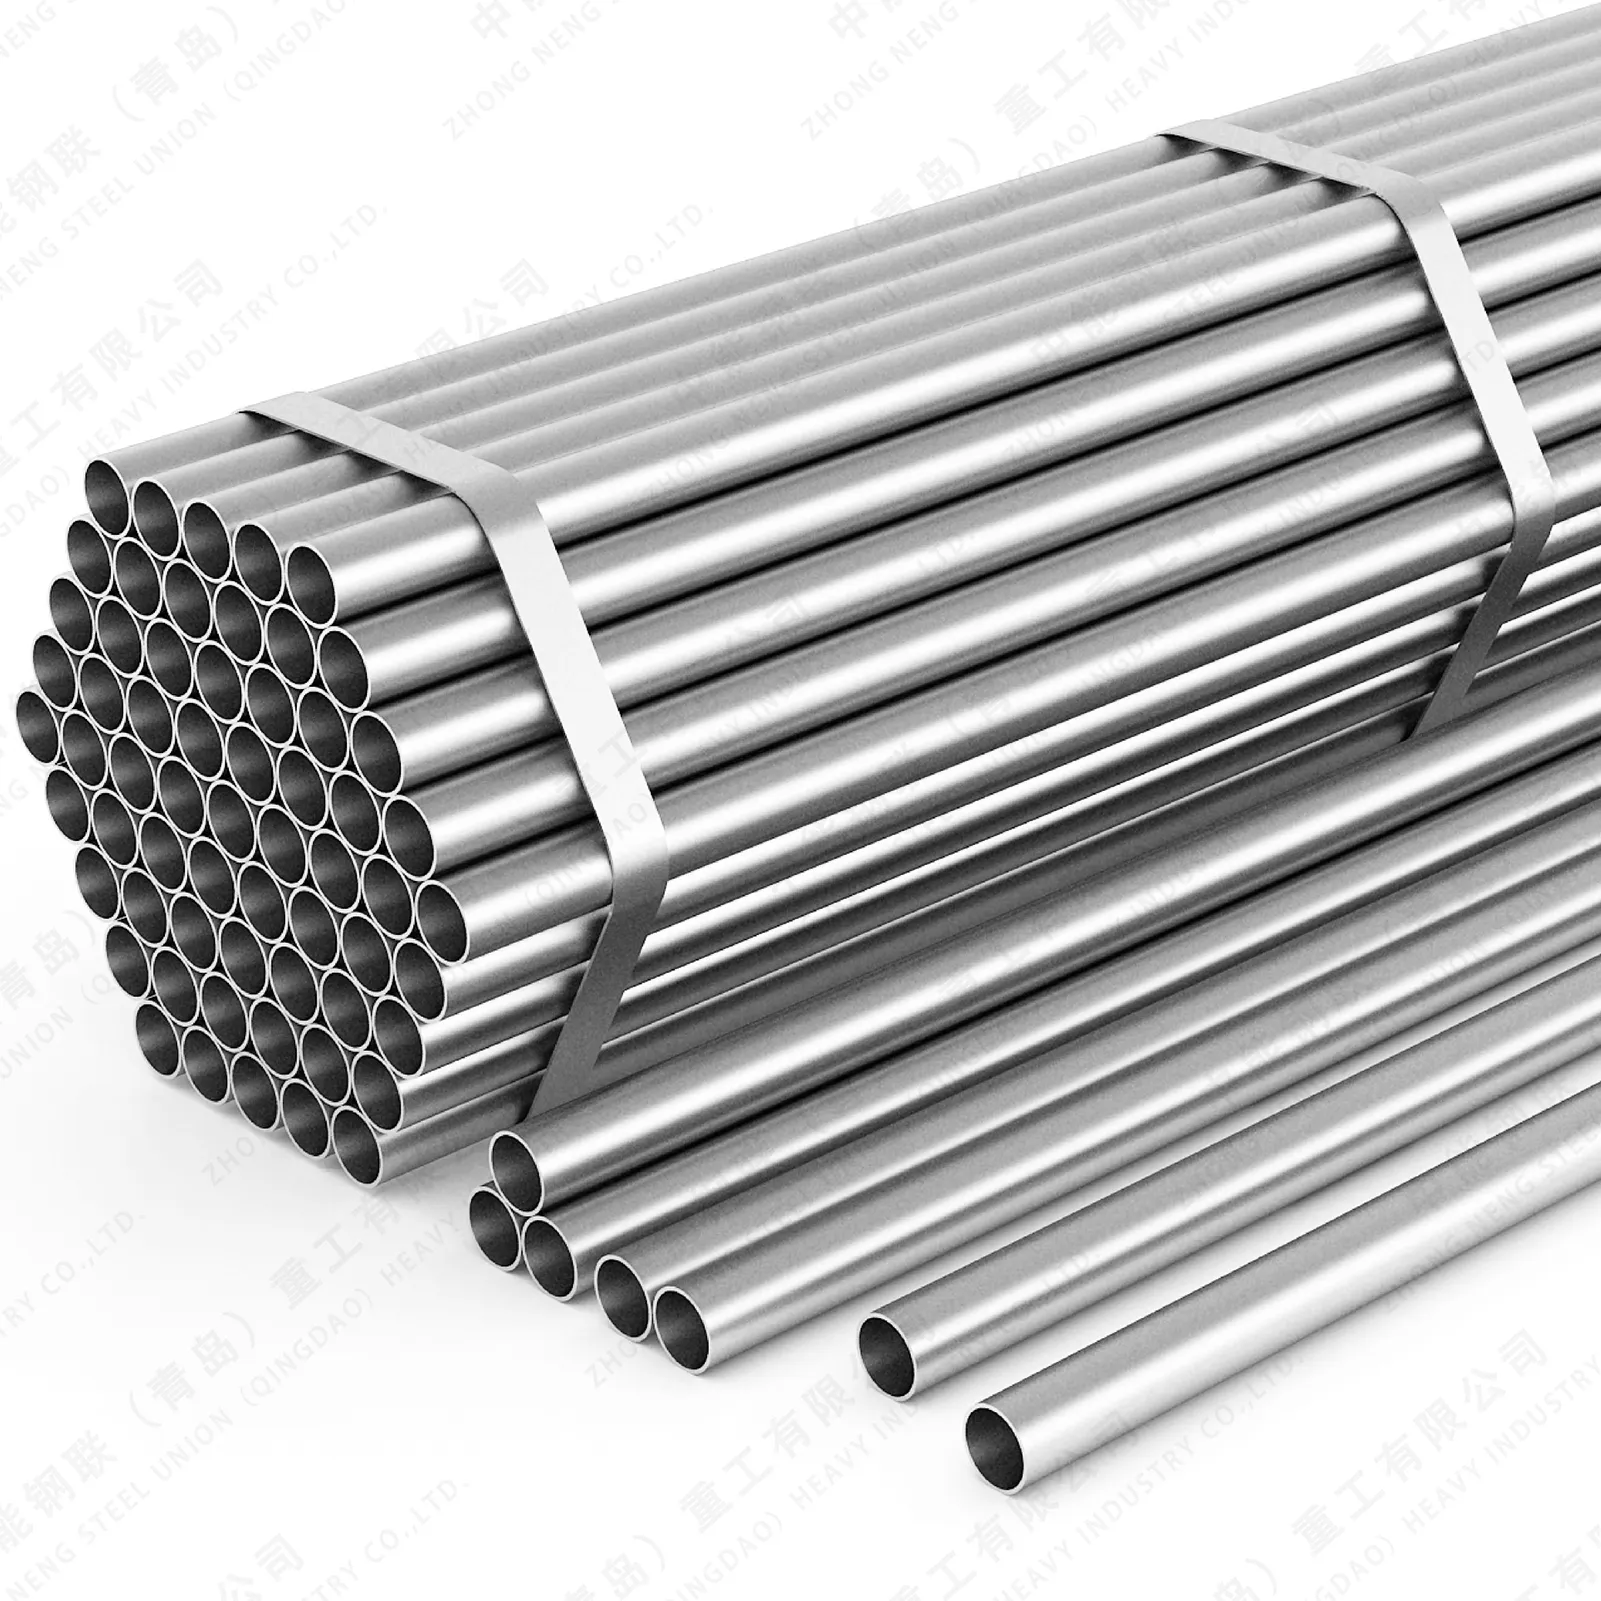 Çin SUS304 paslanmaz çelik boru Sch10 paslanmaz çelik 304 boru fiyatları